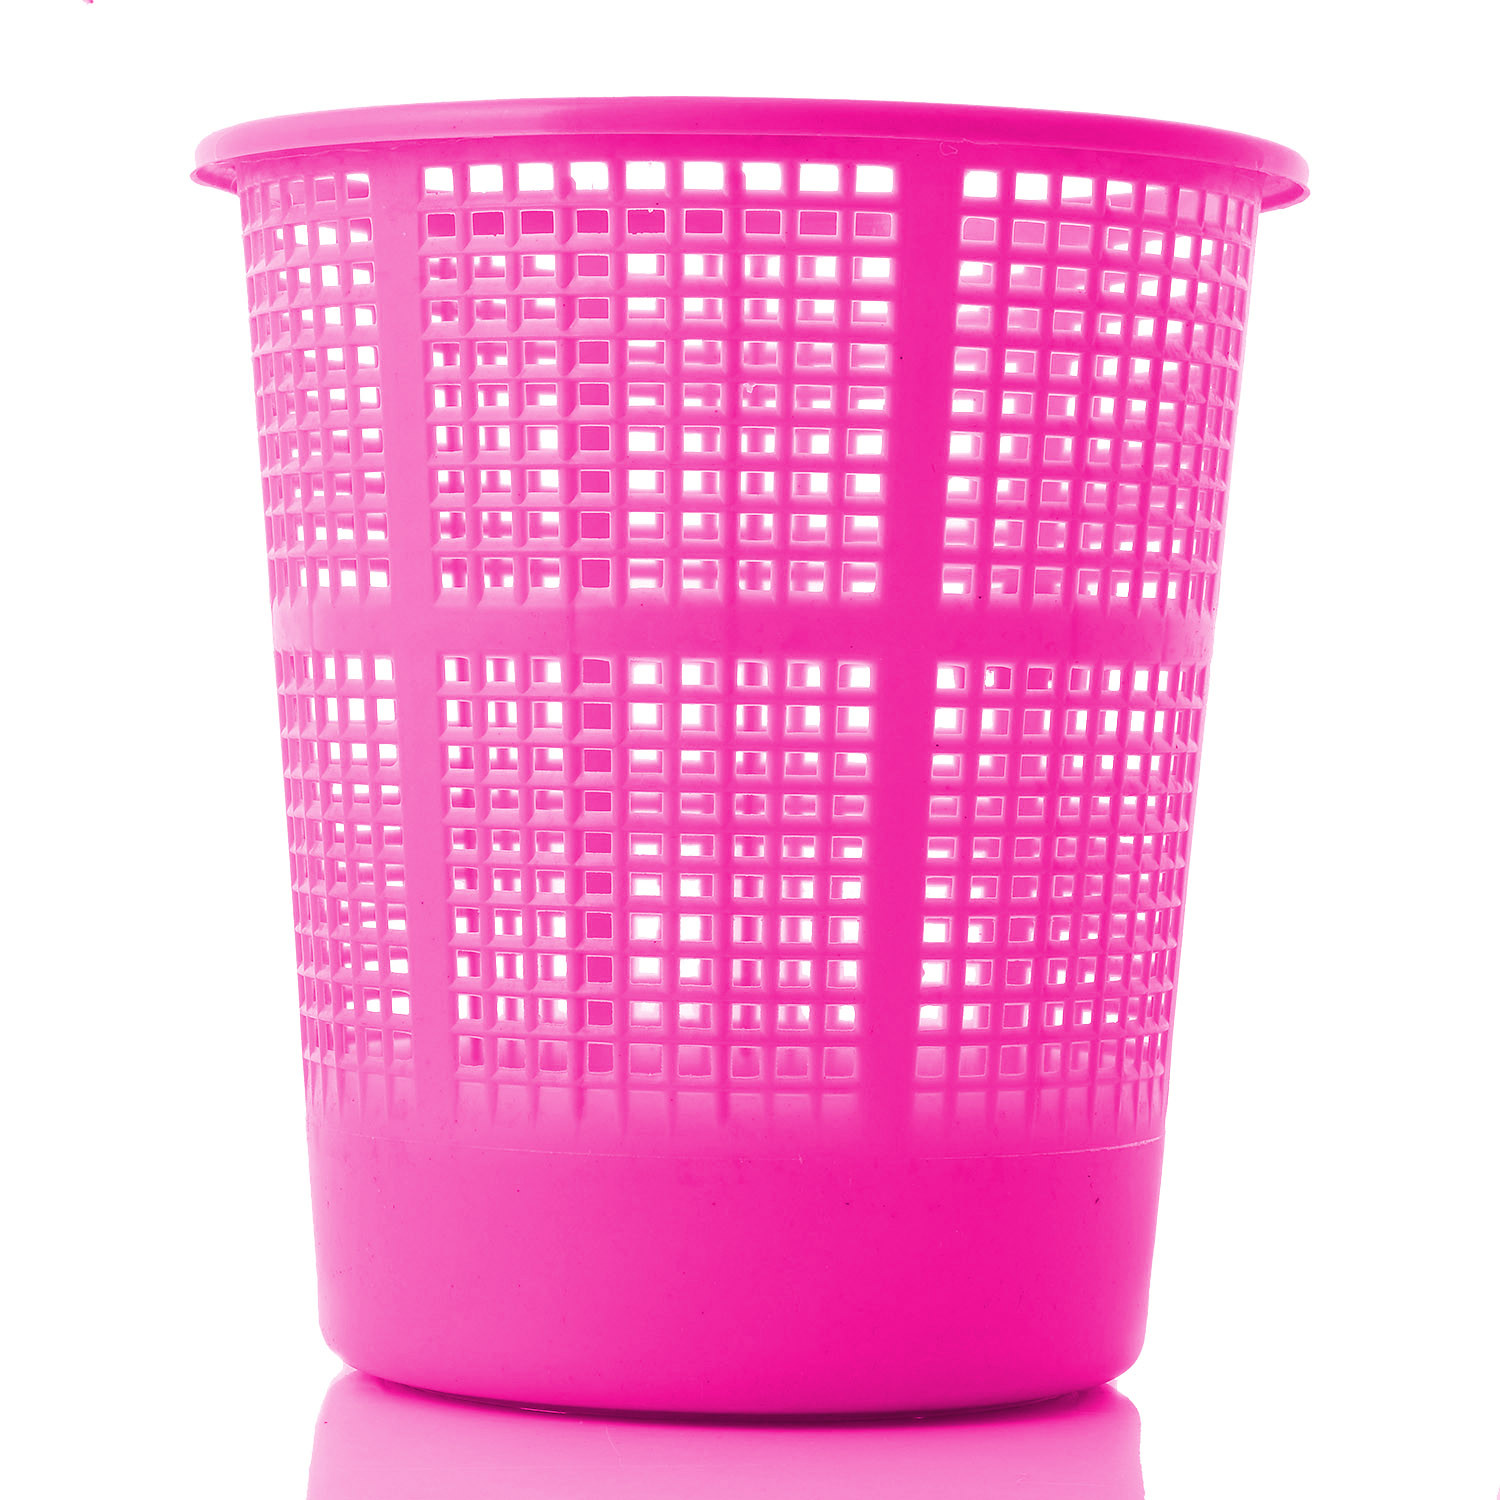 Kuber Industries Plastic Mesh Dustbin Garbage Bin for Office use, School, Bedroom,Kids Room, Home, Multi Purpose,5 Liters (Green & Pink)-KUBMART270